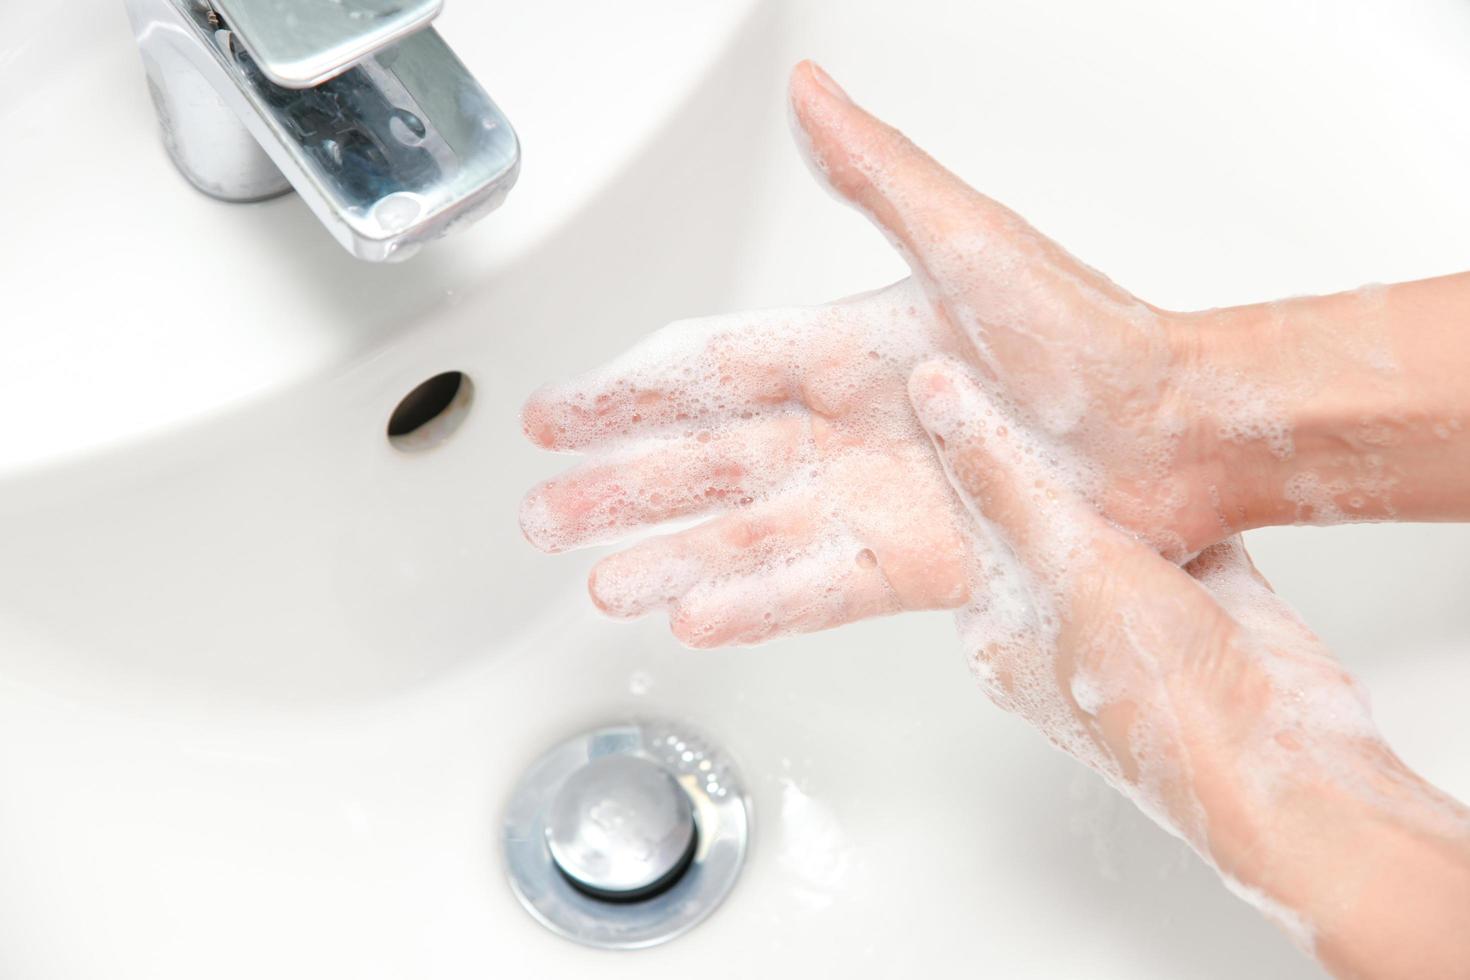 mulher usa sabão e lava as mãos sob a torneira de água. foto